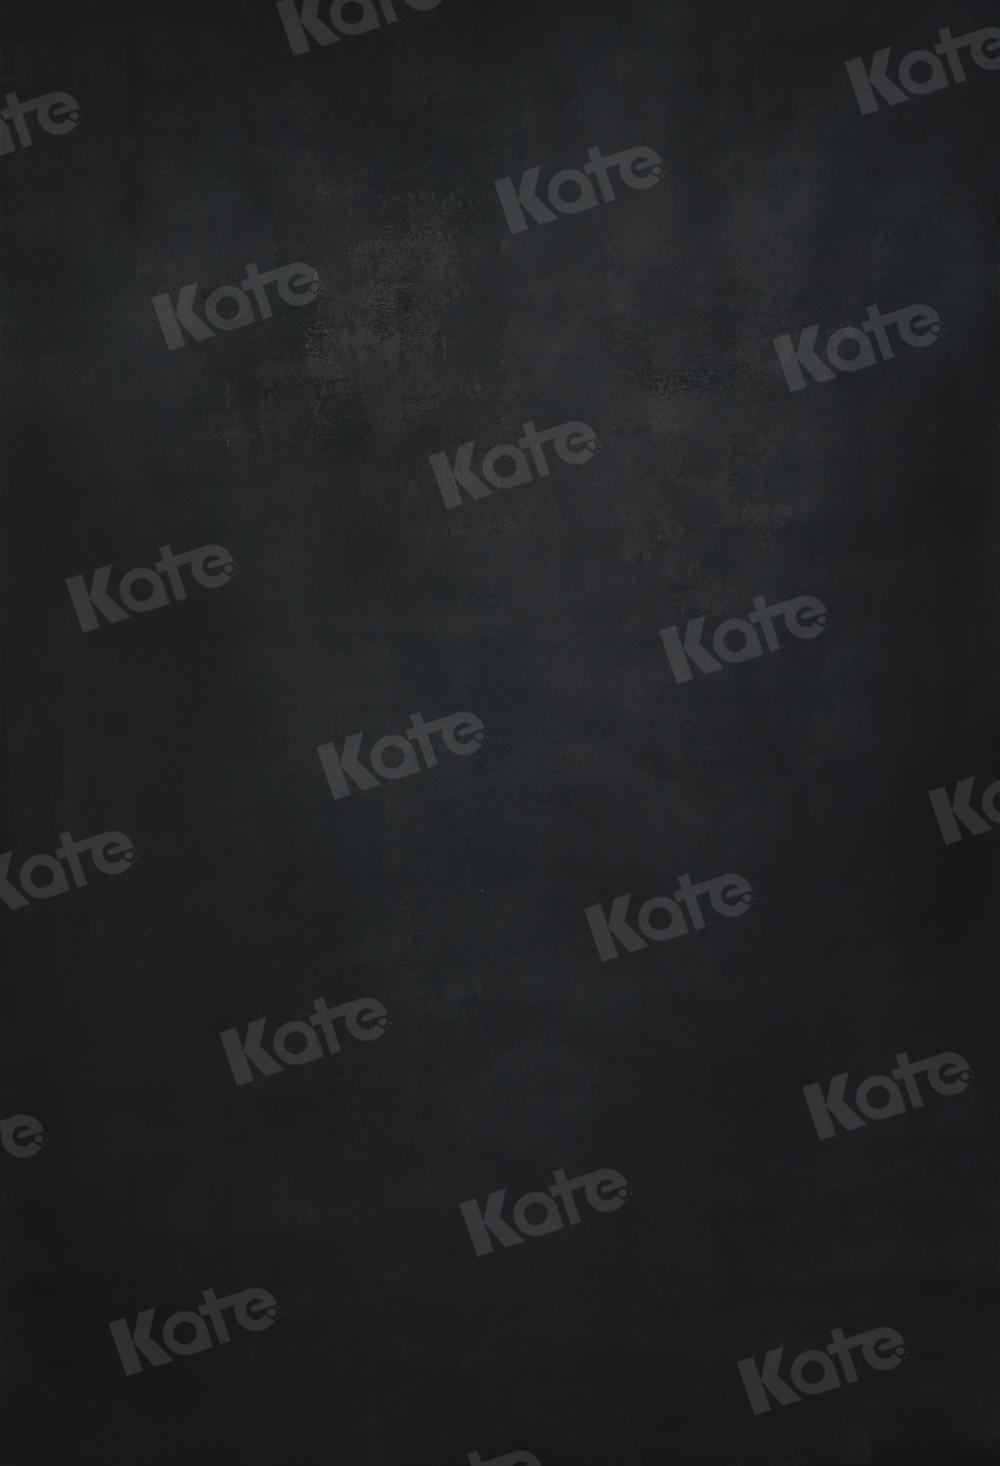 Kate Abstrakte schwarze strukturierte Hintergründe für Fotografie